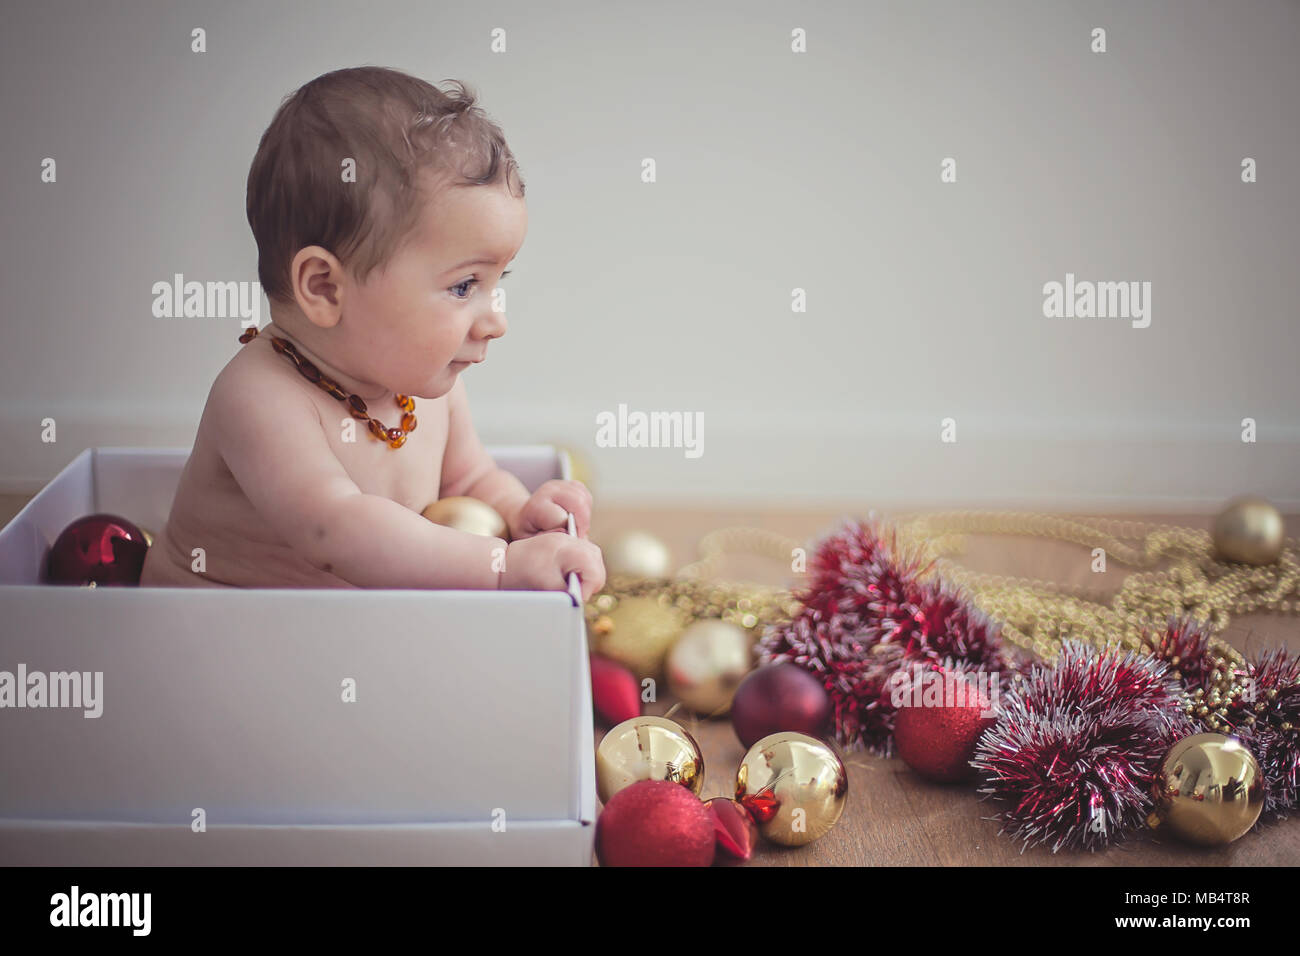 Bébé de 6 mois dans une boîte avec des décorations de Noël Banque D'Images